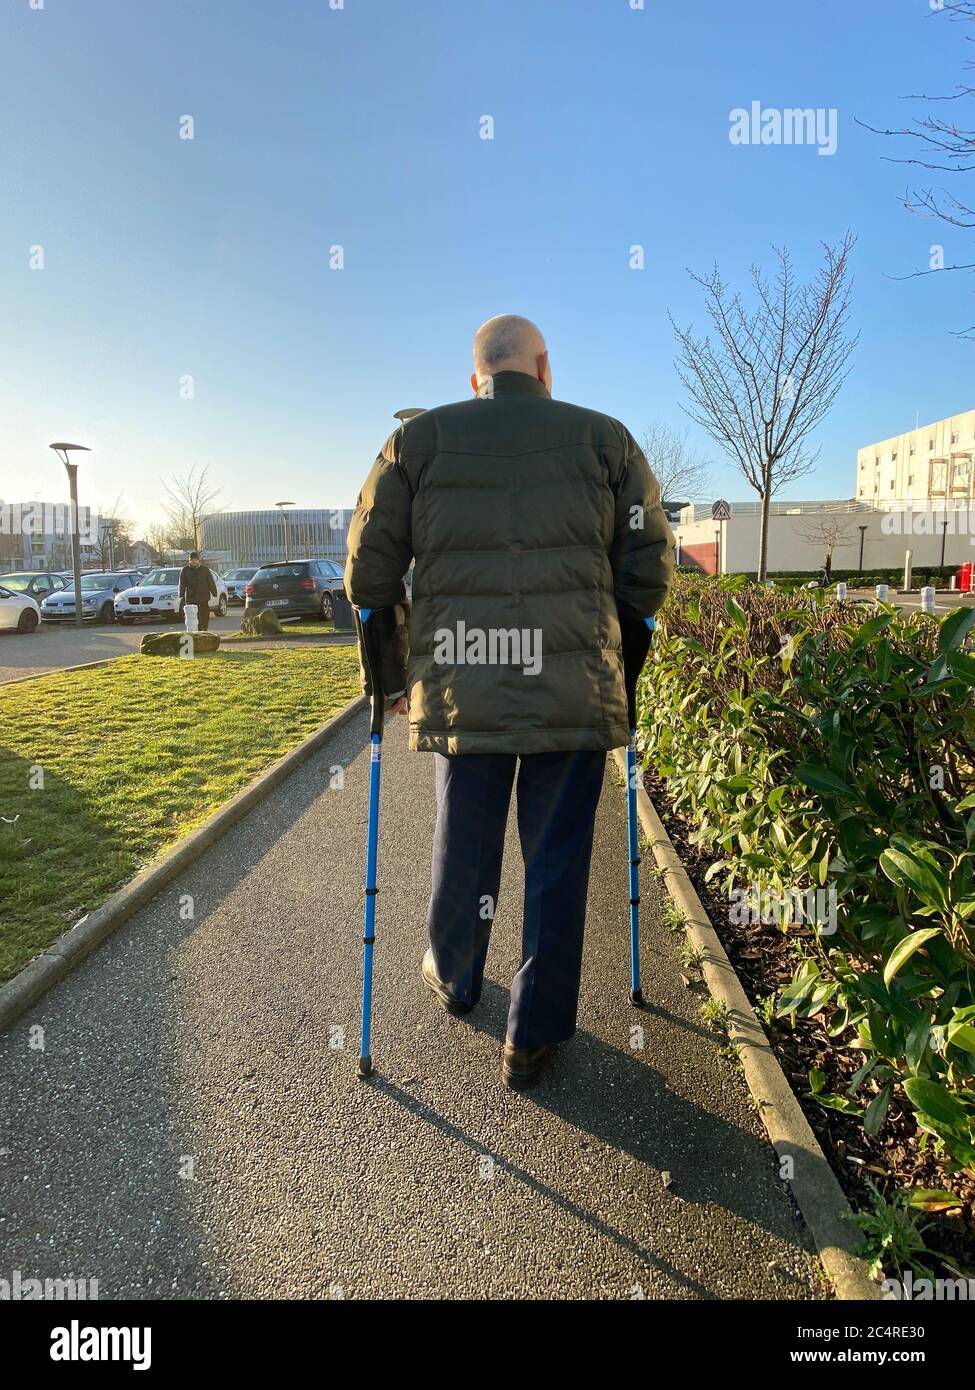 Straßburg, Frankreich - 20. Januar 2020: Rückansicht eines älteren Mannes, der mit Stöcken auf einem großen französischen Parkplatz im Krankenhaus unterwegs ist Stockfoto